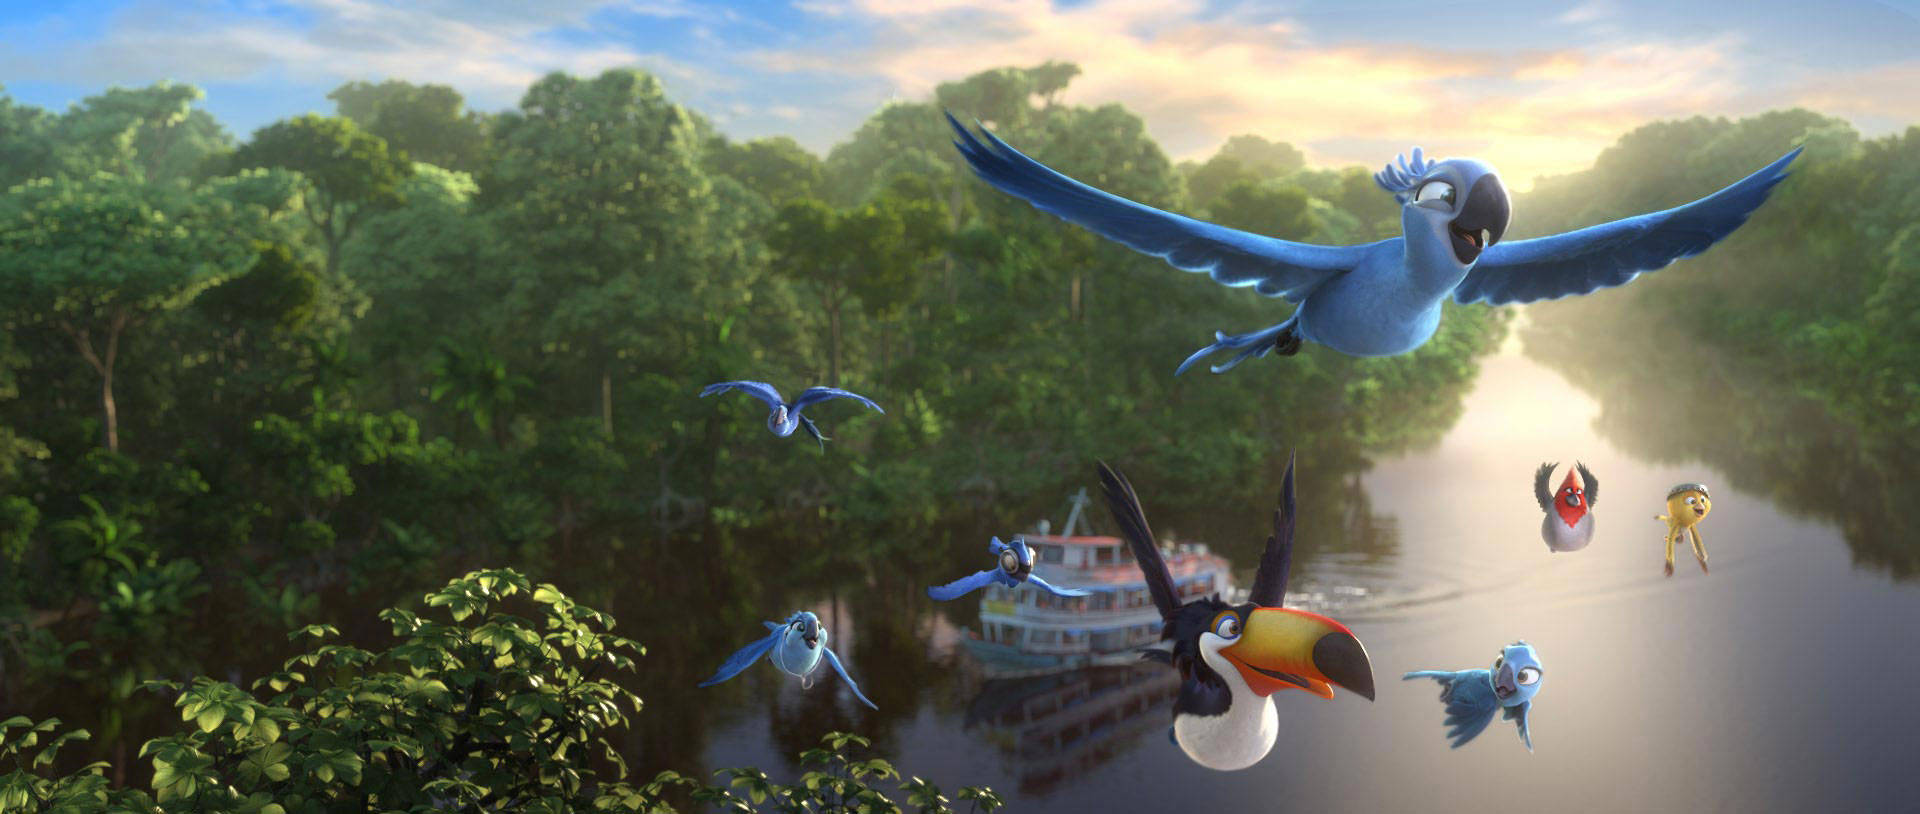 Pájarosvolando En El Río Amazonas Fondo de pantalla